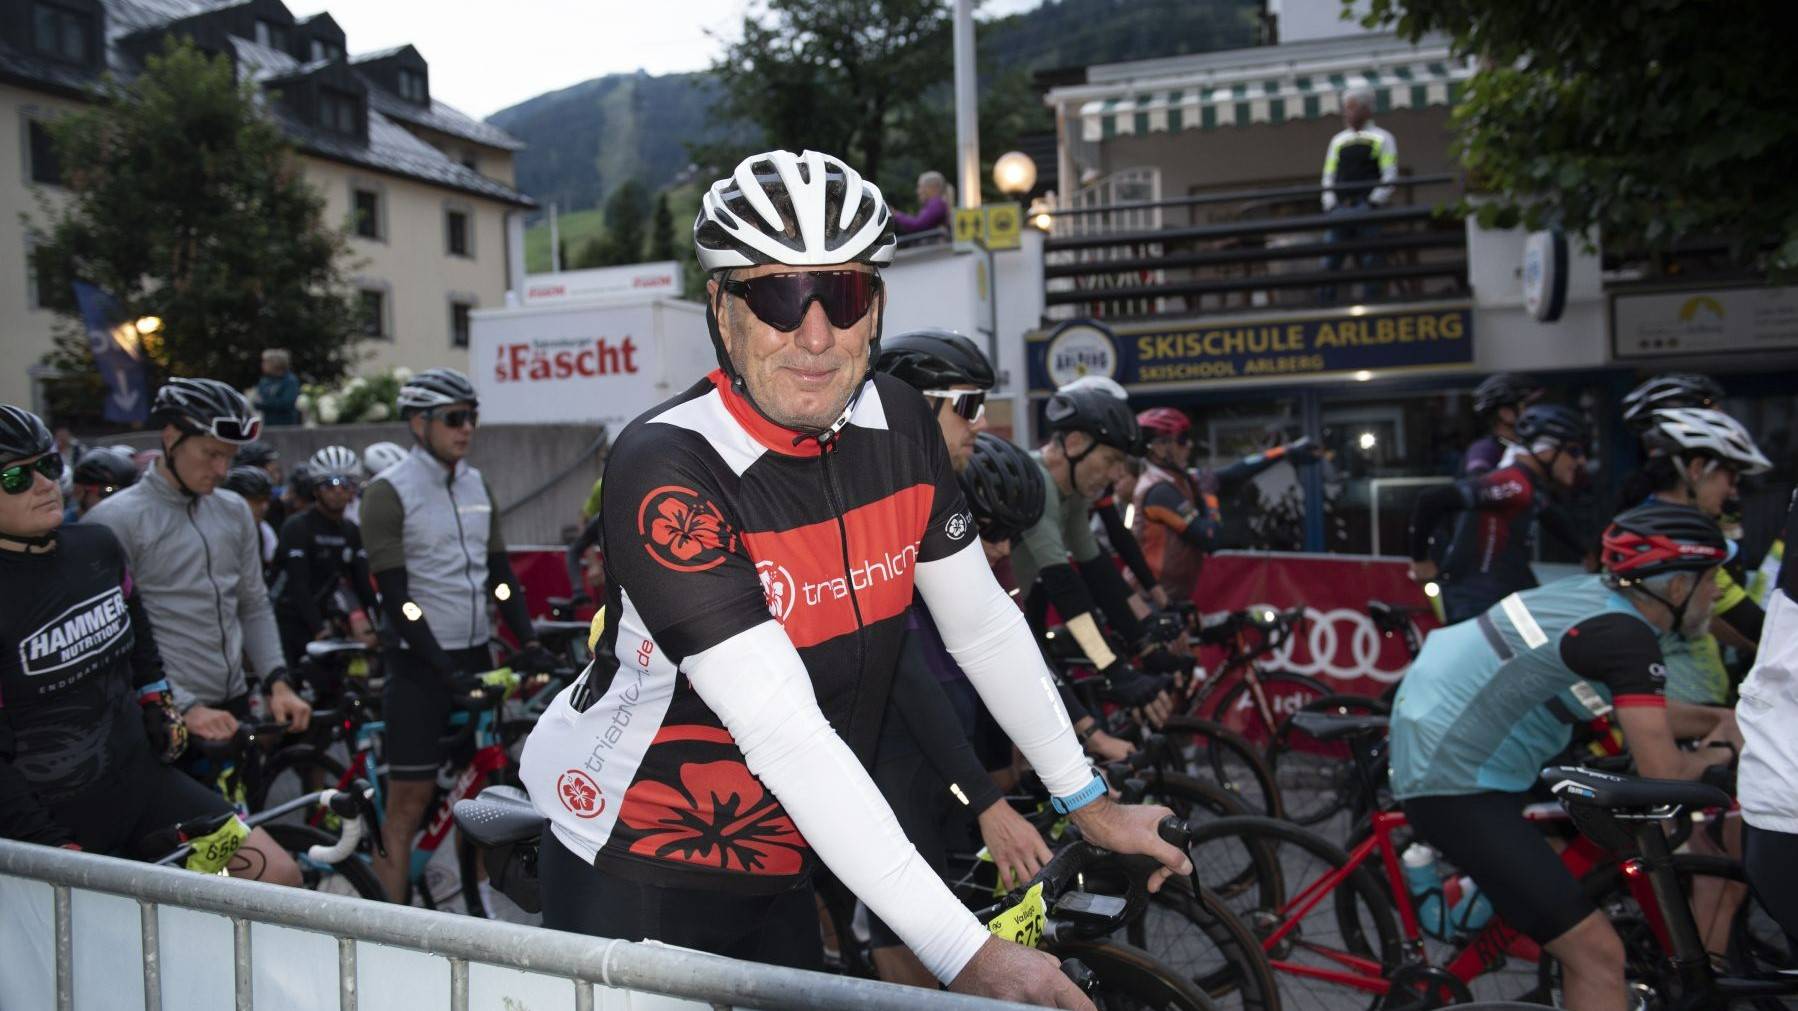 Rennbericht Arlberg Giro 2022 - Eine ehrliche Berg und Talfahrt